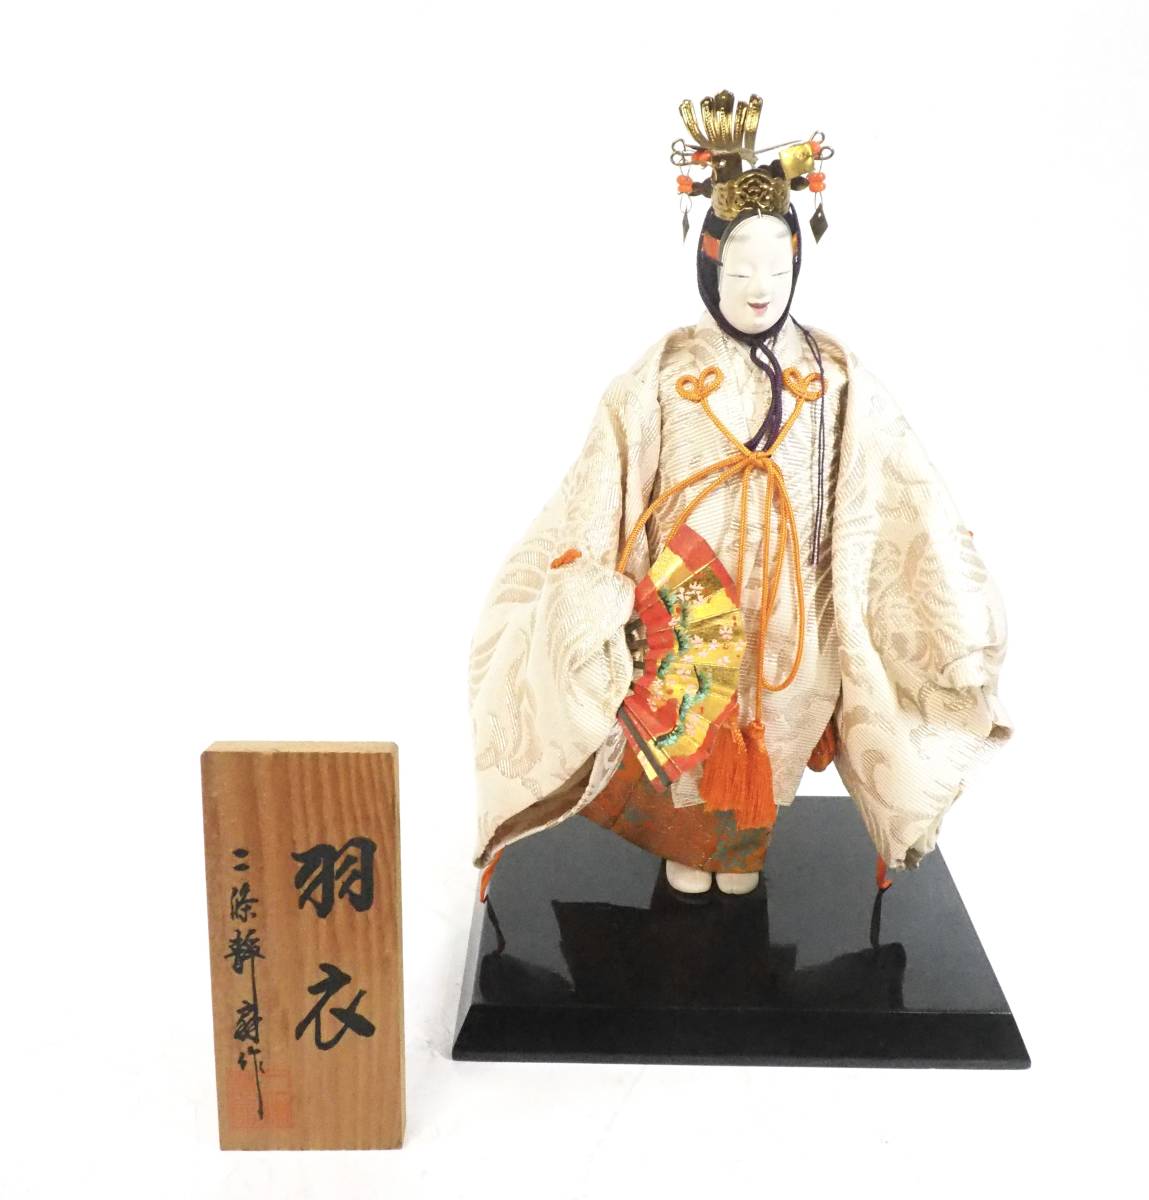 日本の伝統美！美しい天人の姿のお人形 昭和ビンテージ 京人形 二条静扇作 能人形 羽衣 台付 1970年代 幅15cm 奥行き12cm 高さ25cm HKS508